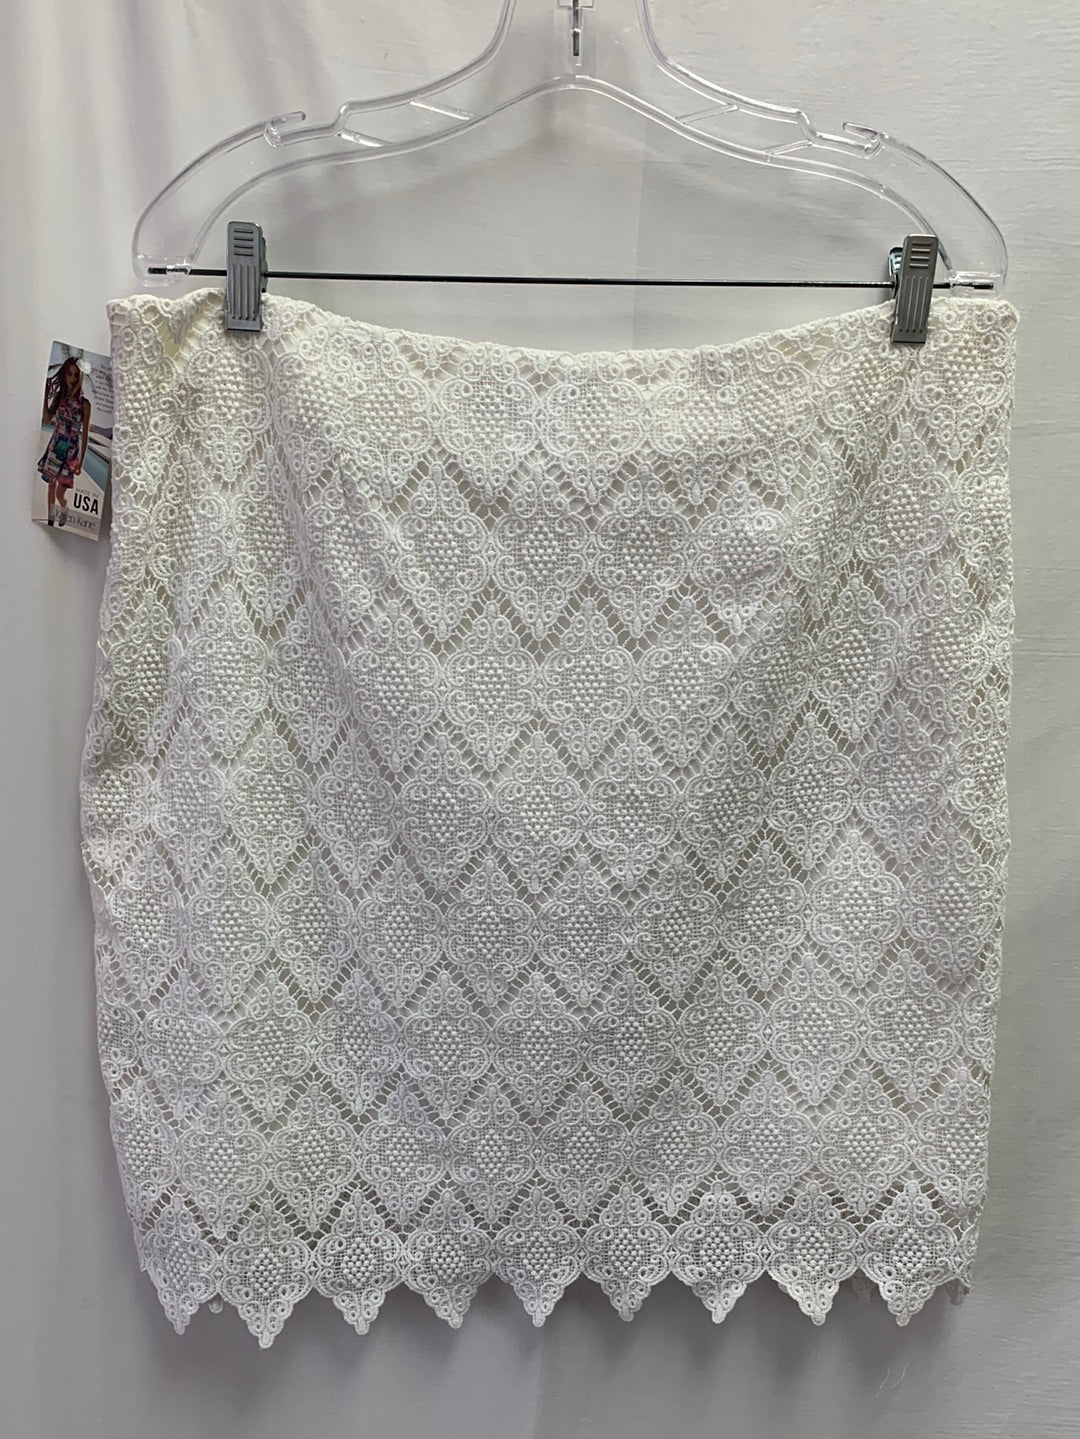 NWT - KAREN KANE white Lace Cotton Pencil Skirt - XL